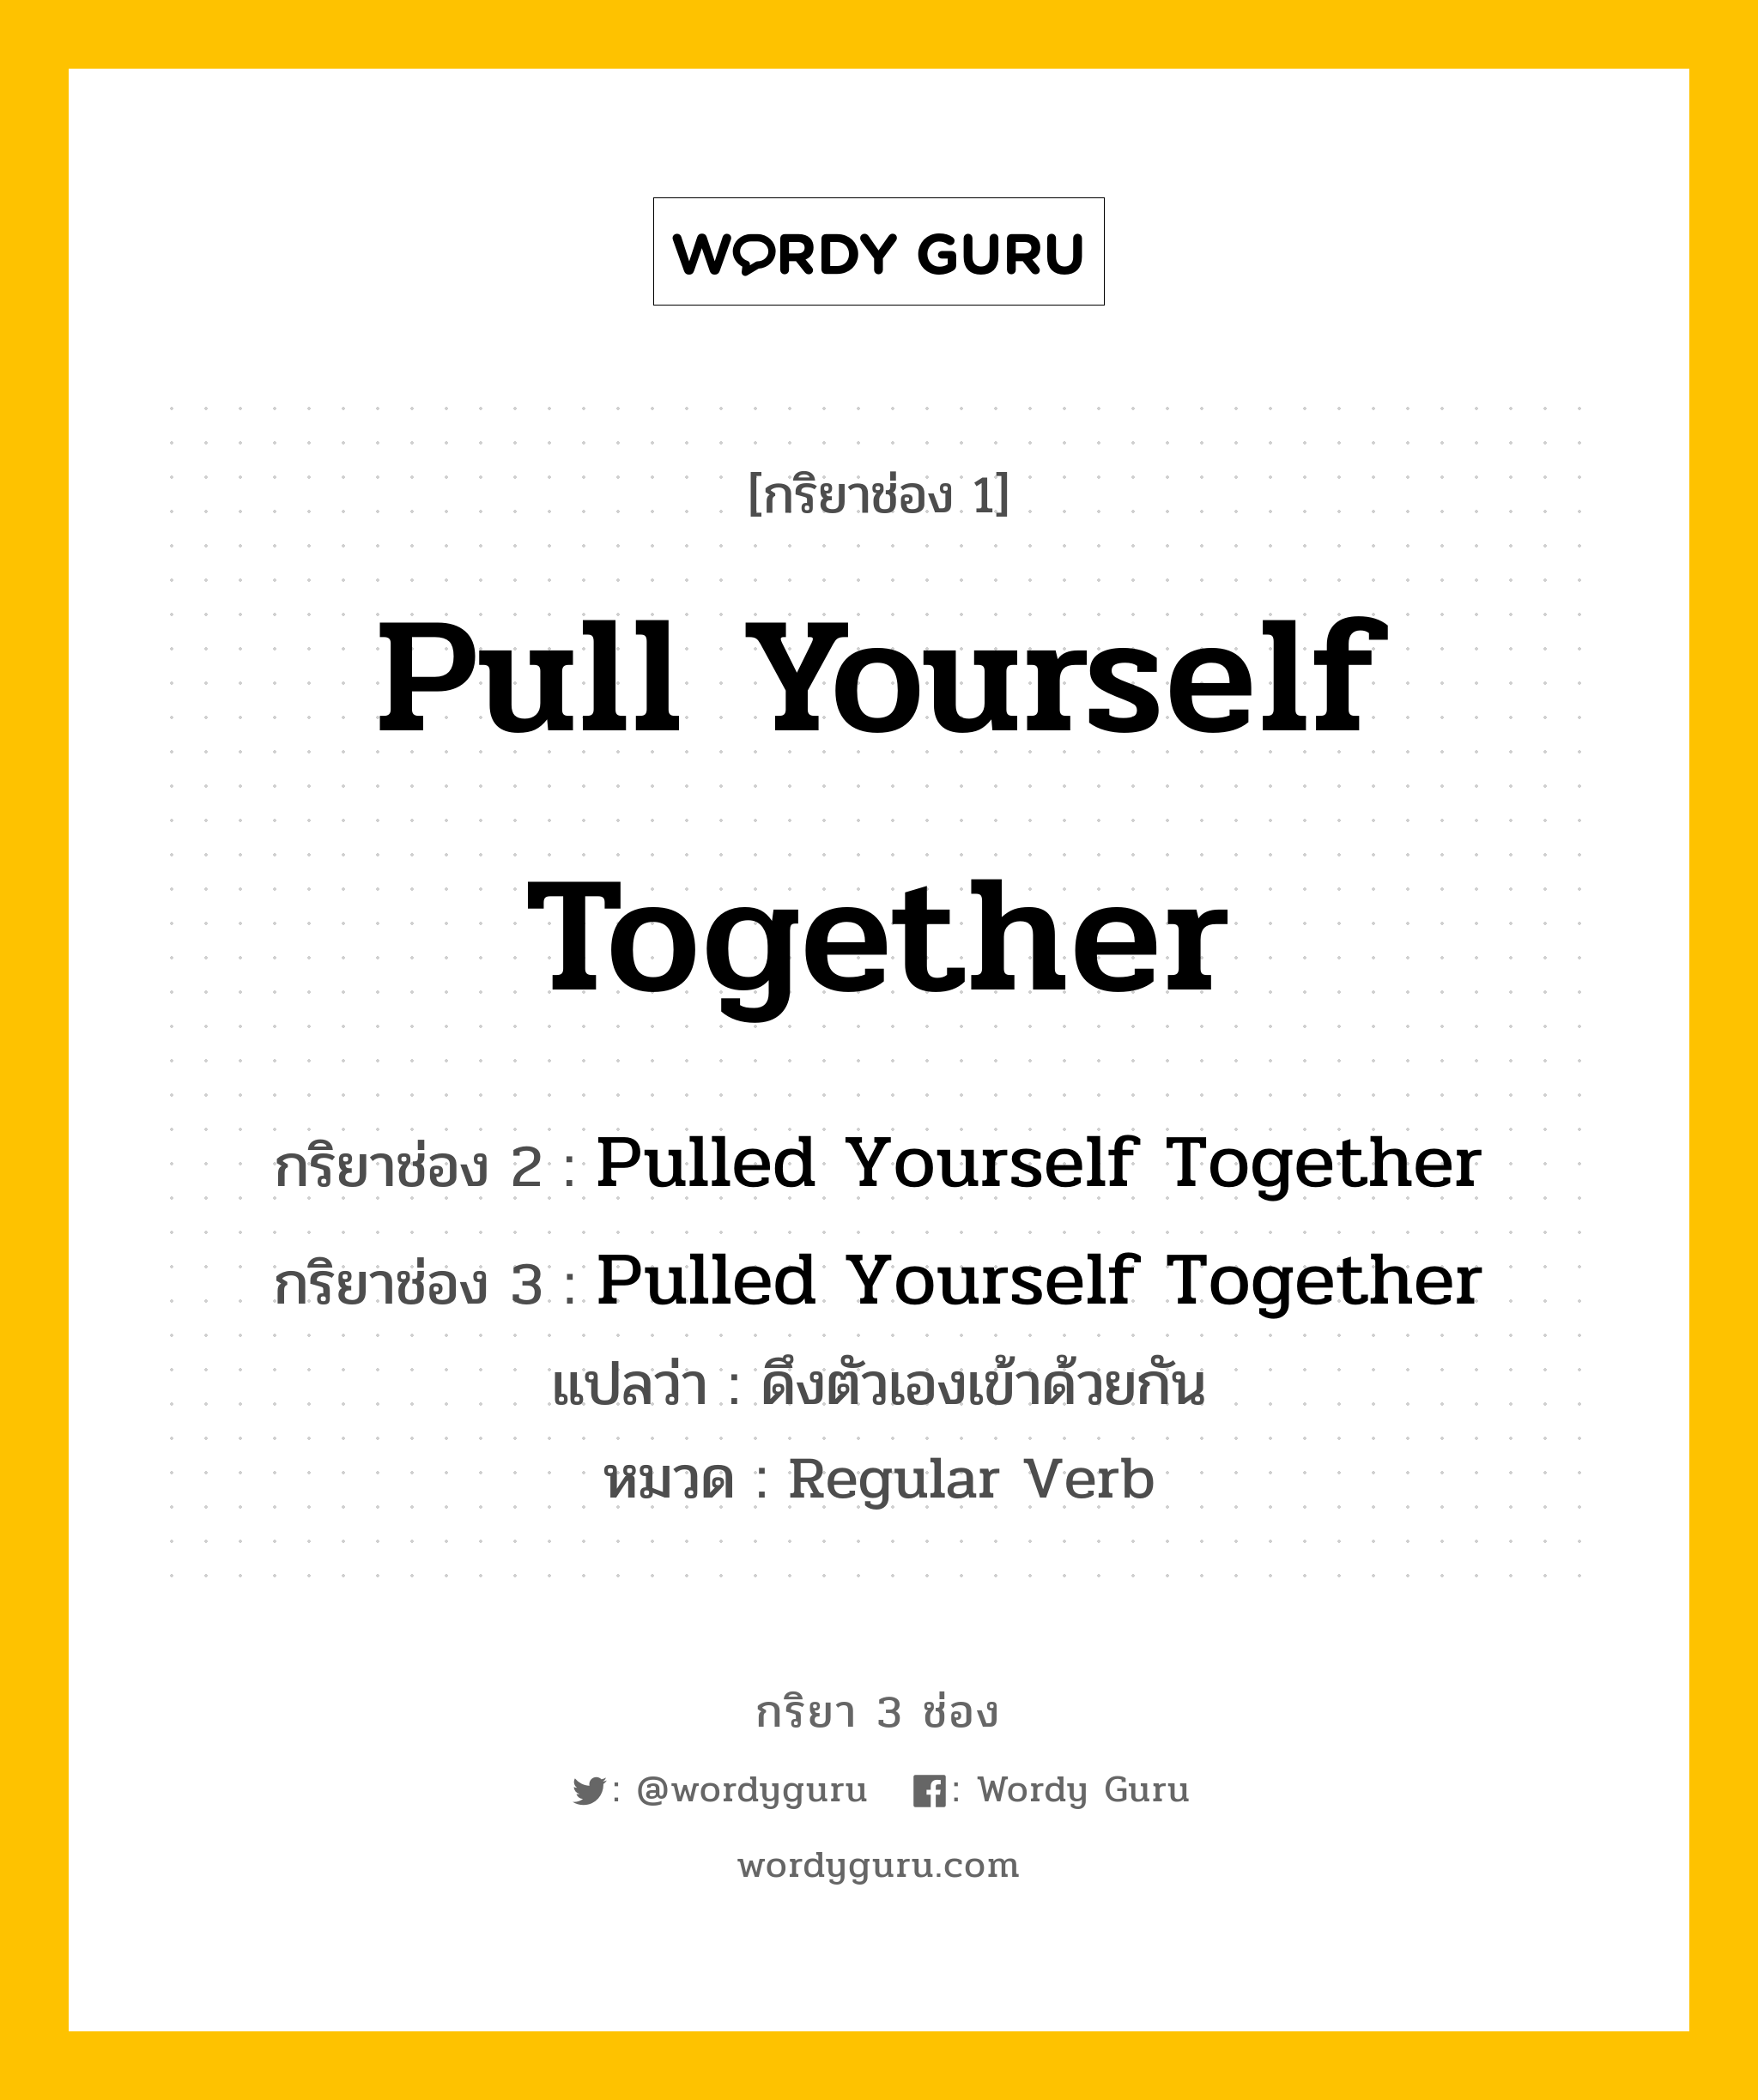 กริยา 3 ช่อง ของ Pull Yourself Together คืออะไร? มาดูคำอ่าน คำแปลกันเลย, กริยาช่อง 1 Pull Yourself Together กริยาช่อง 2 Pulled Yourself Together กริยาช่อง 3 Pulled Yourself Together แปลว่า ดึงตัวเองเข้าด้วยกัน หมวด Regular Verb หมวด Regular Verb